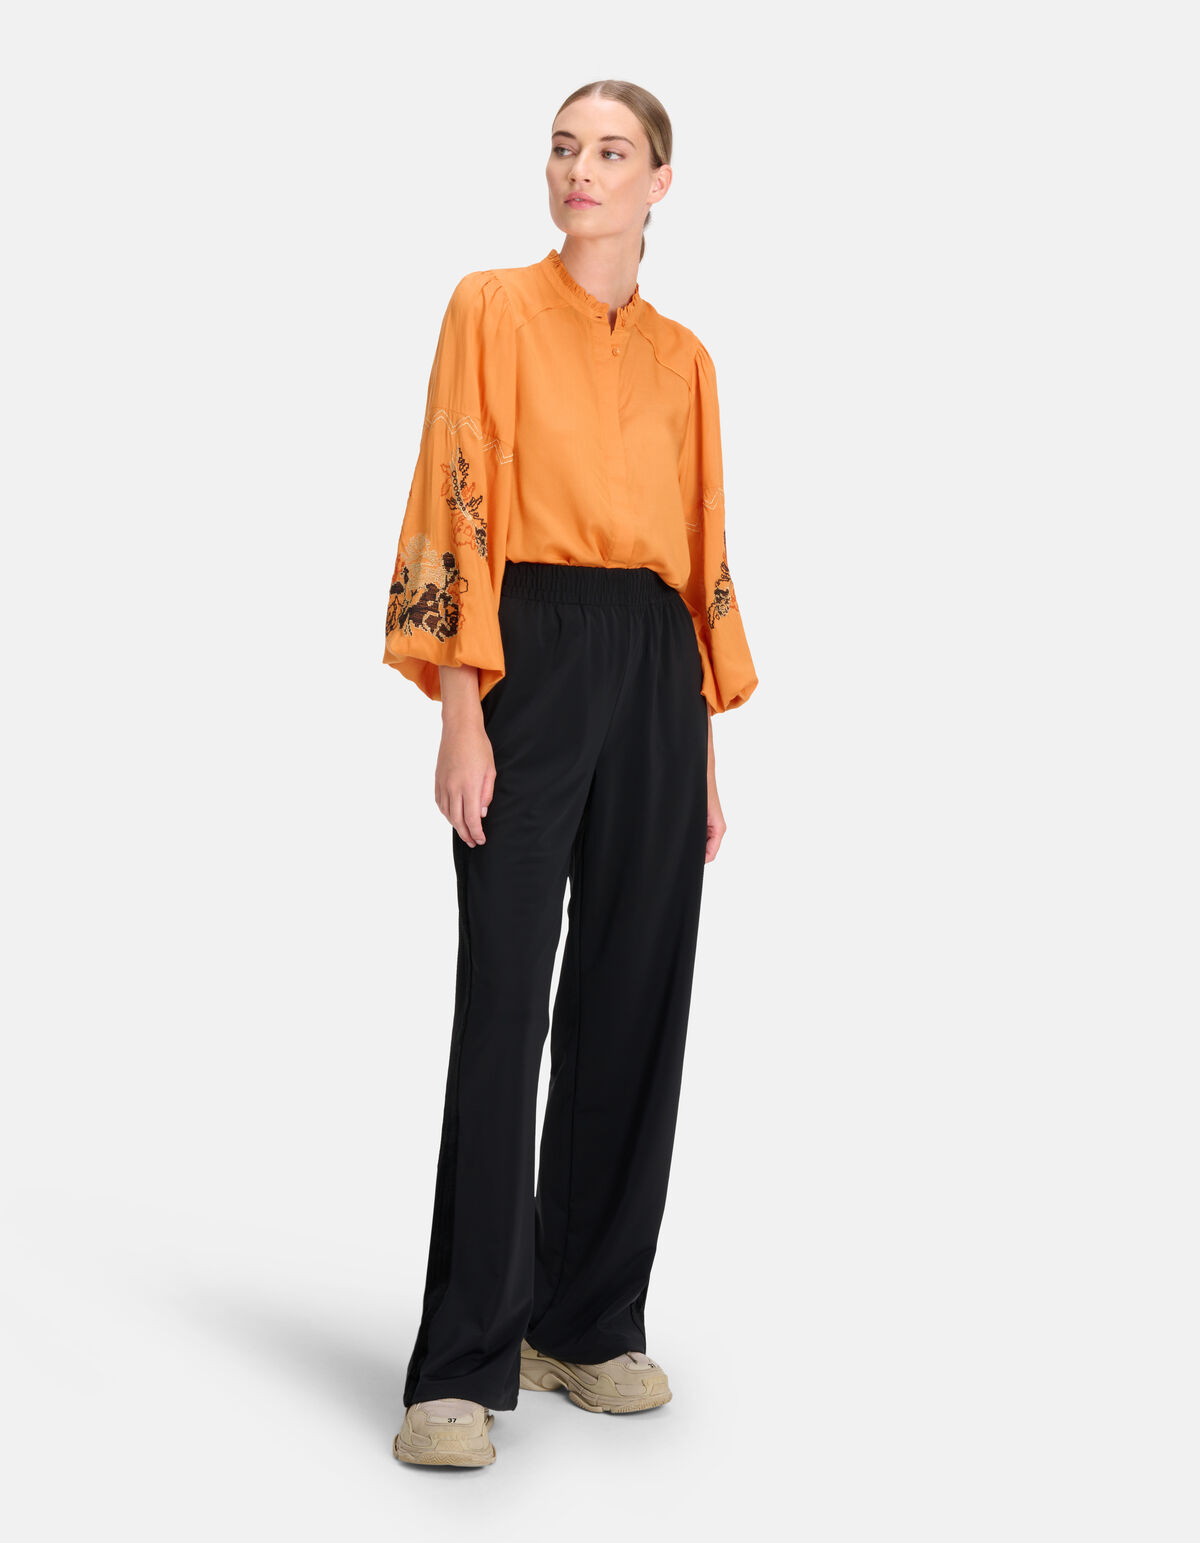 Bestickte Bluse Orange von Mieke SHOEBY WOMEN